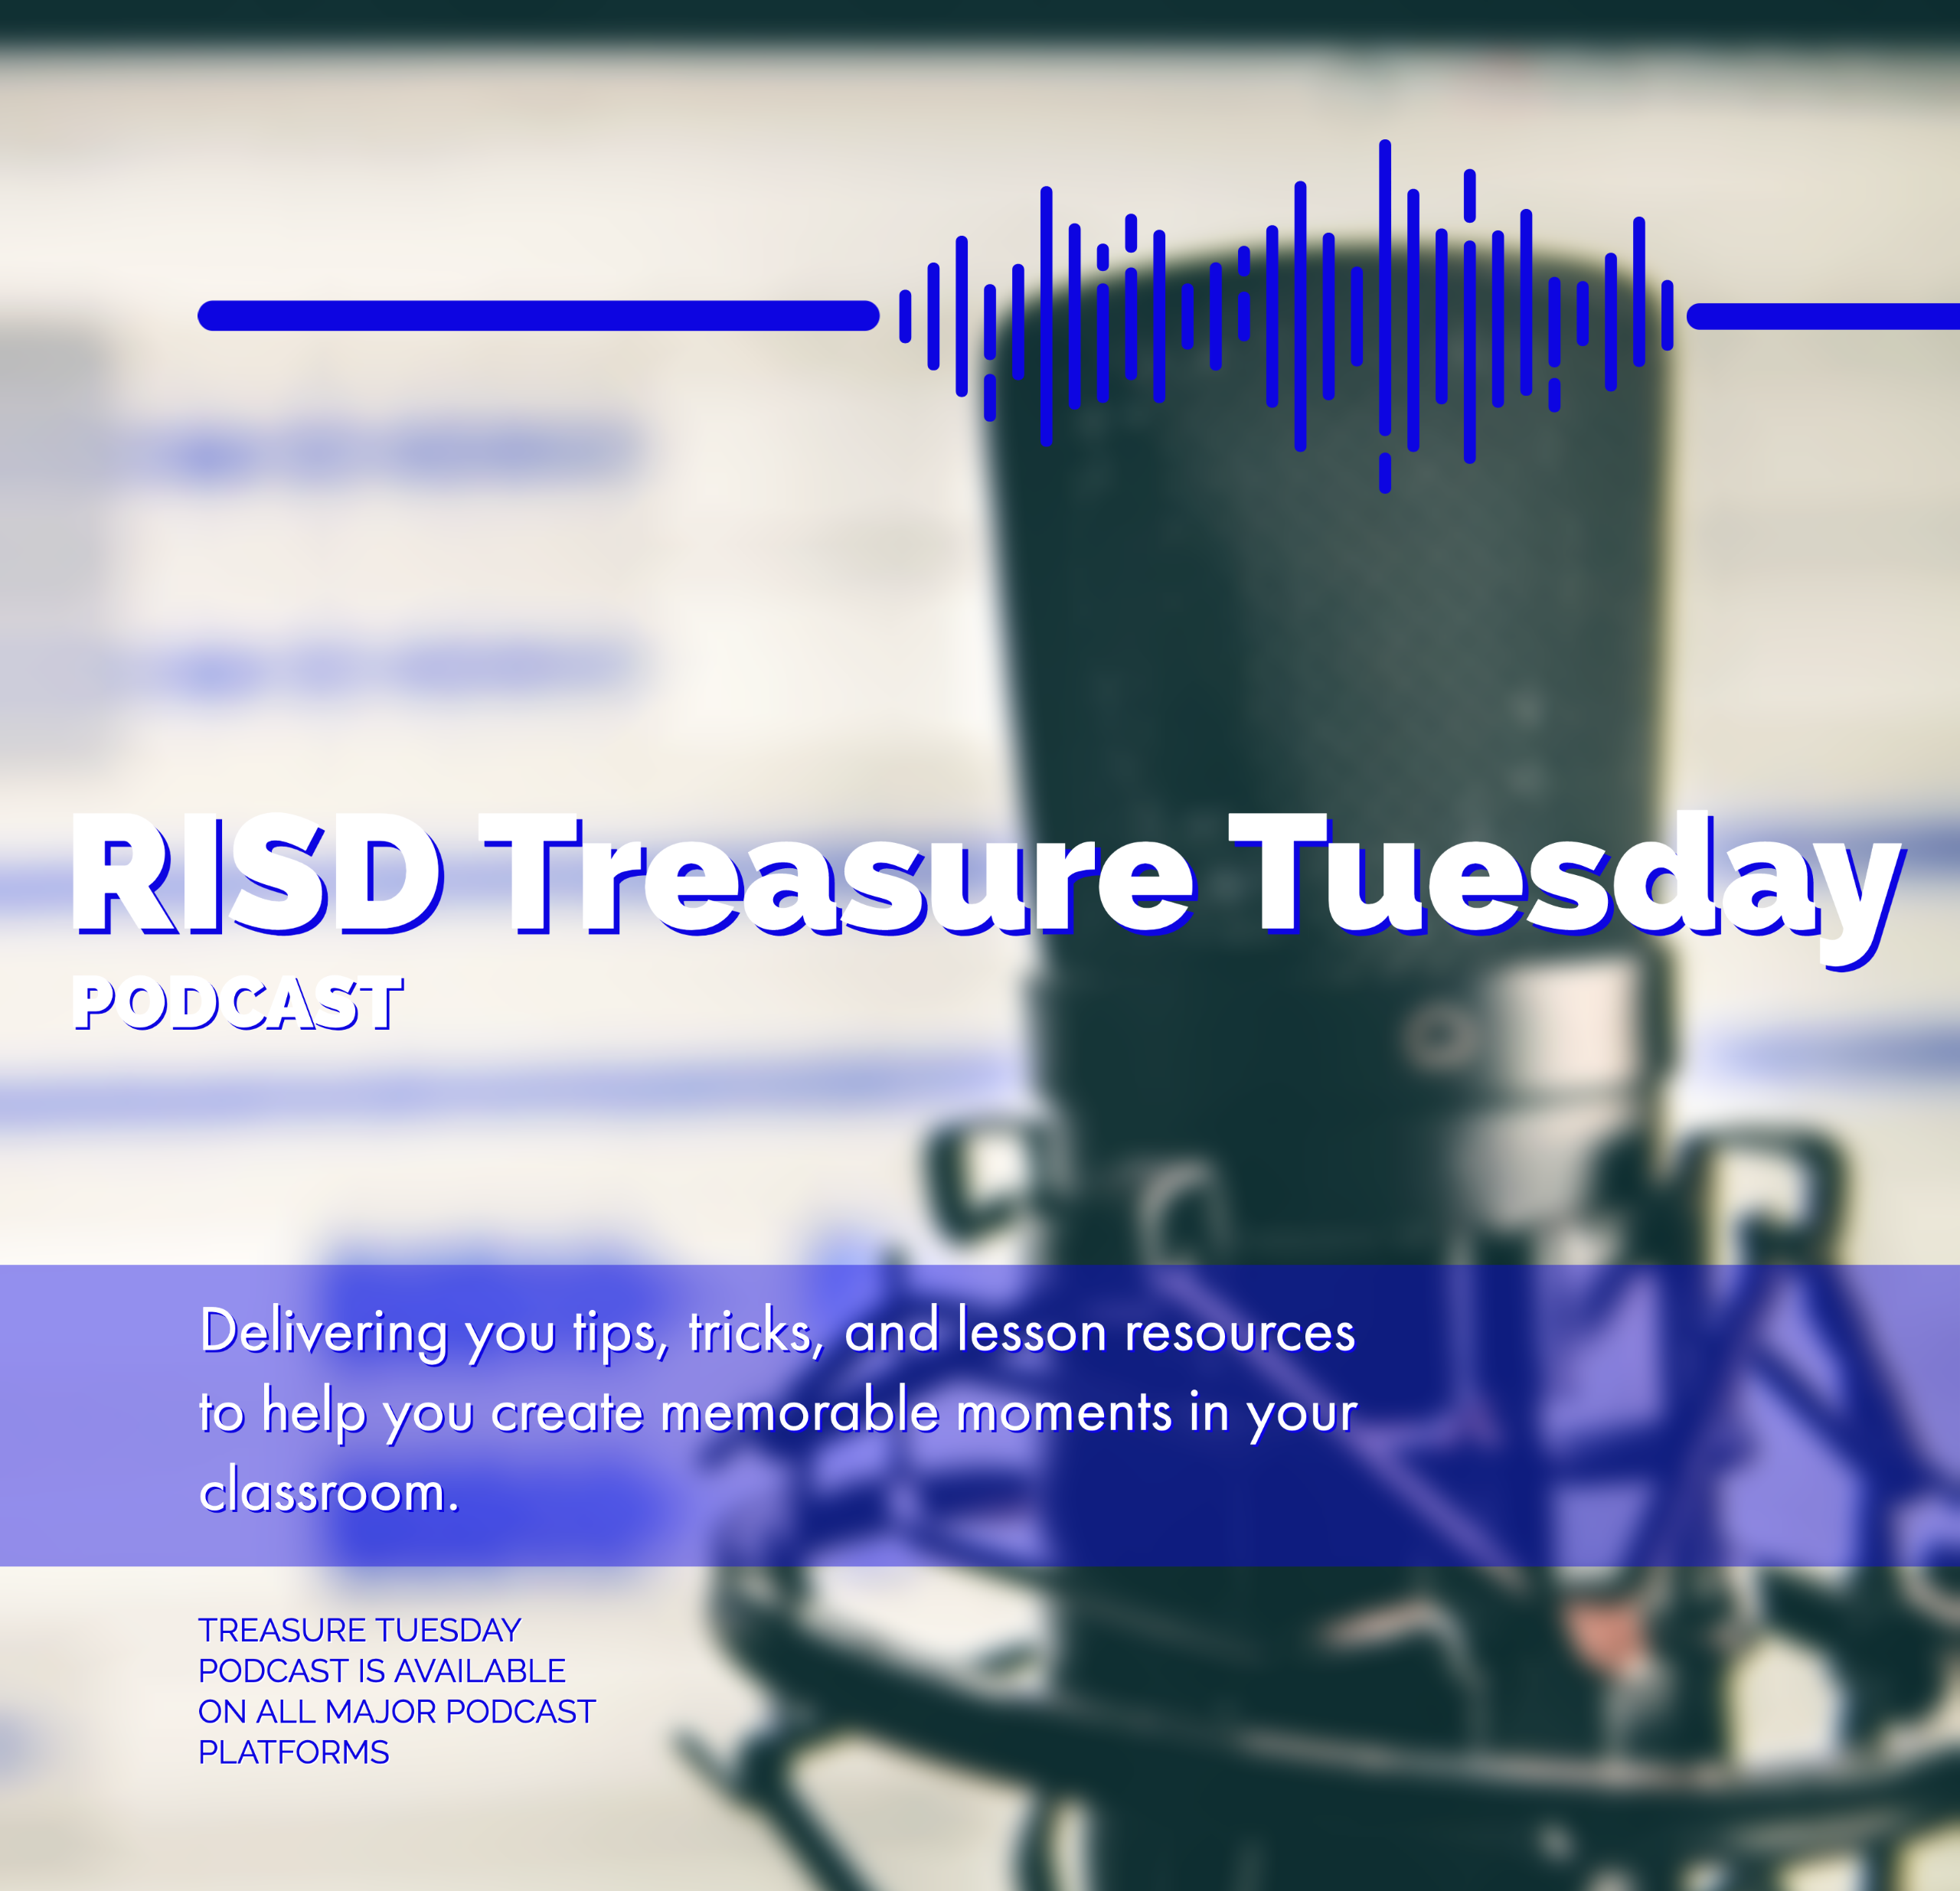 RISD Treasure Tuesday Podcast